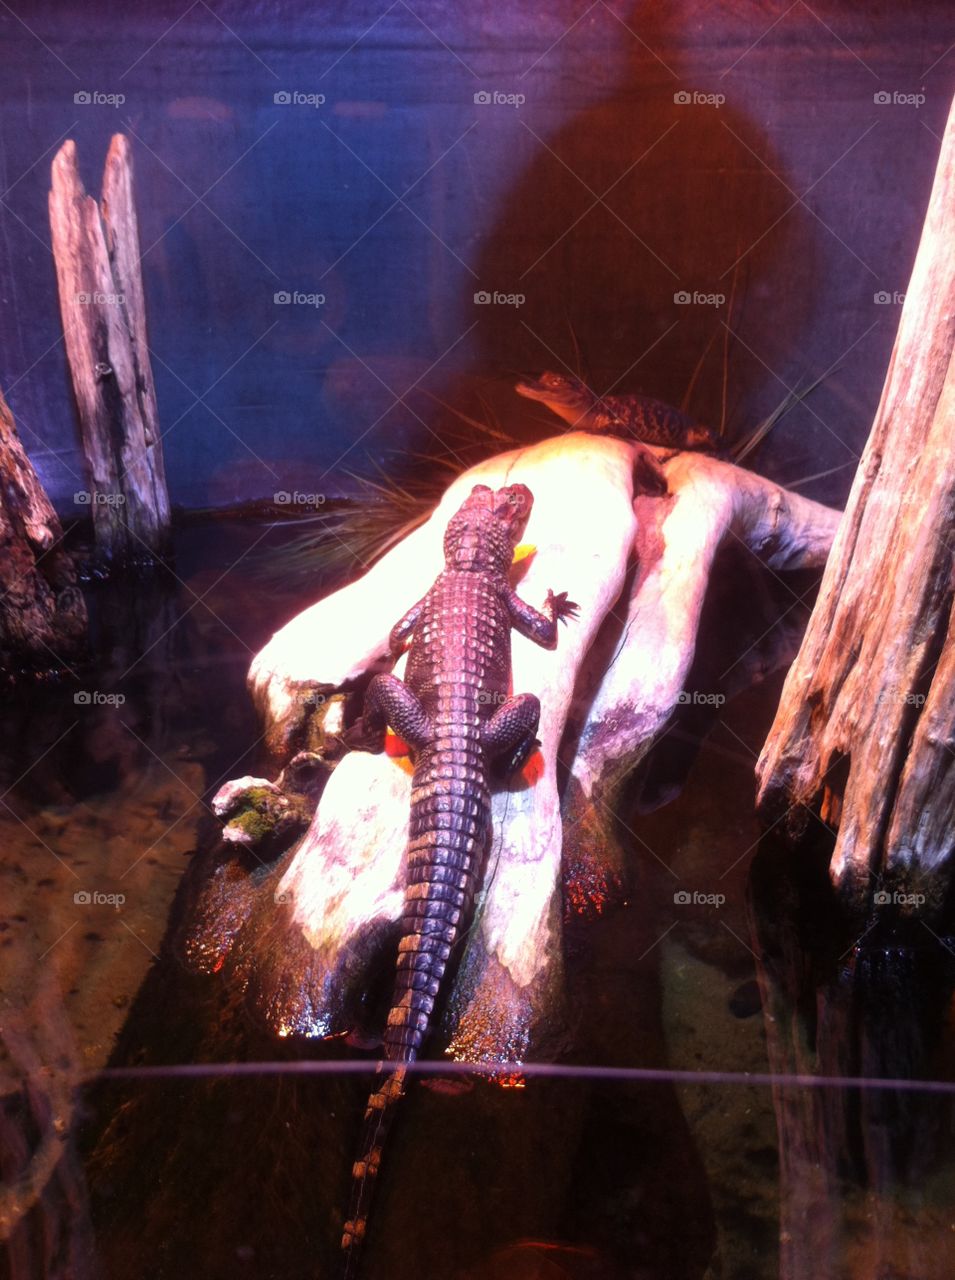 Lizard sunning. Lizard sunning in Oklahoma aquarium 